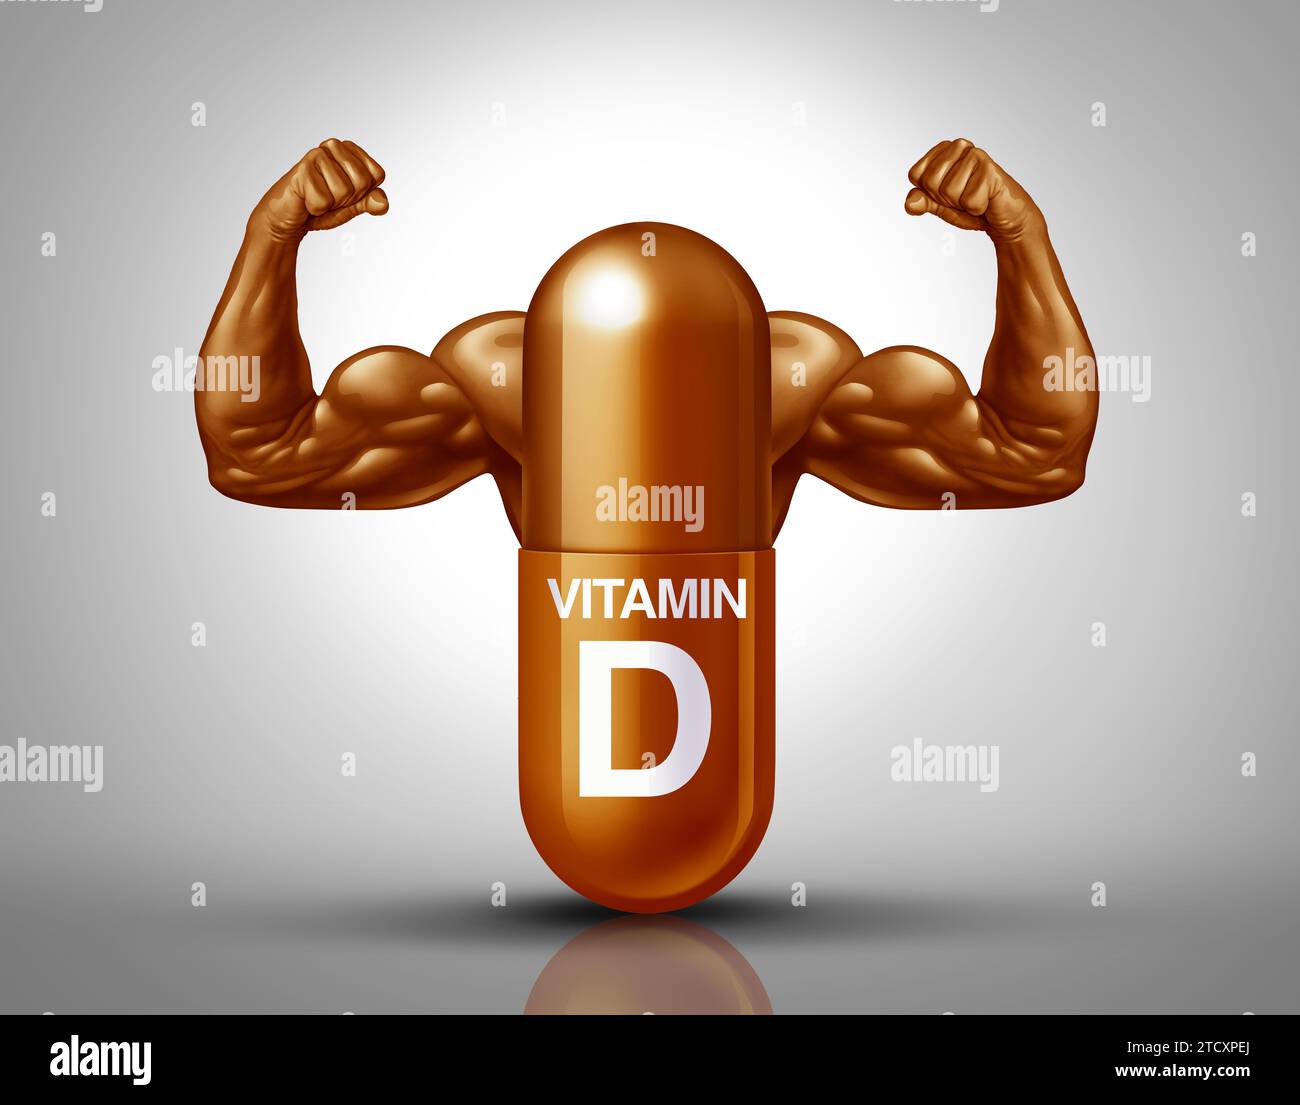 Vitamin D Power Supplement Konzept und Diätnahrungspille Nährstoffkapsel für das Immunsystem und die allgemeine Gesundheit mit Muskel Bizeps in einem Pharma Stockfoto